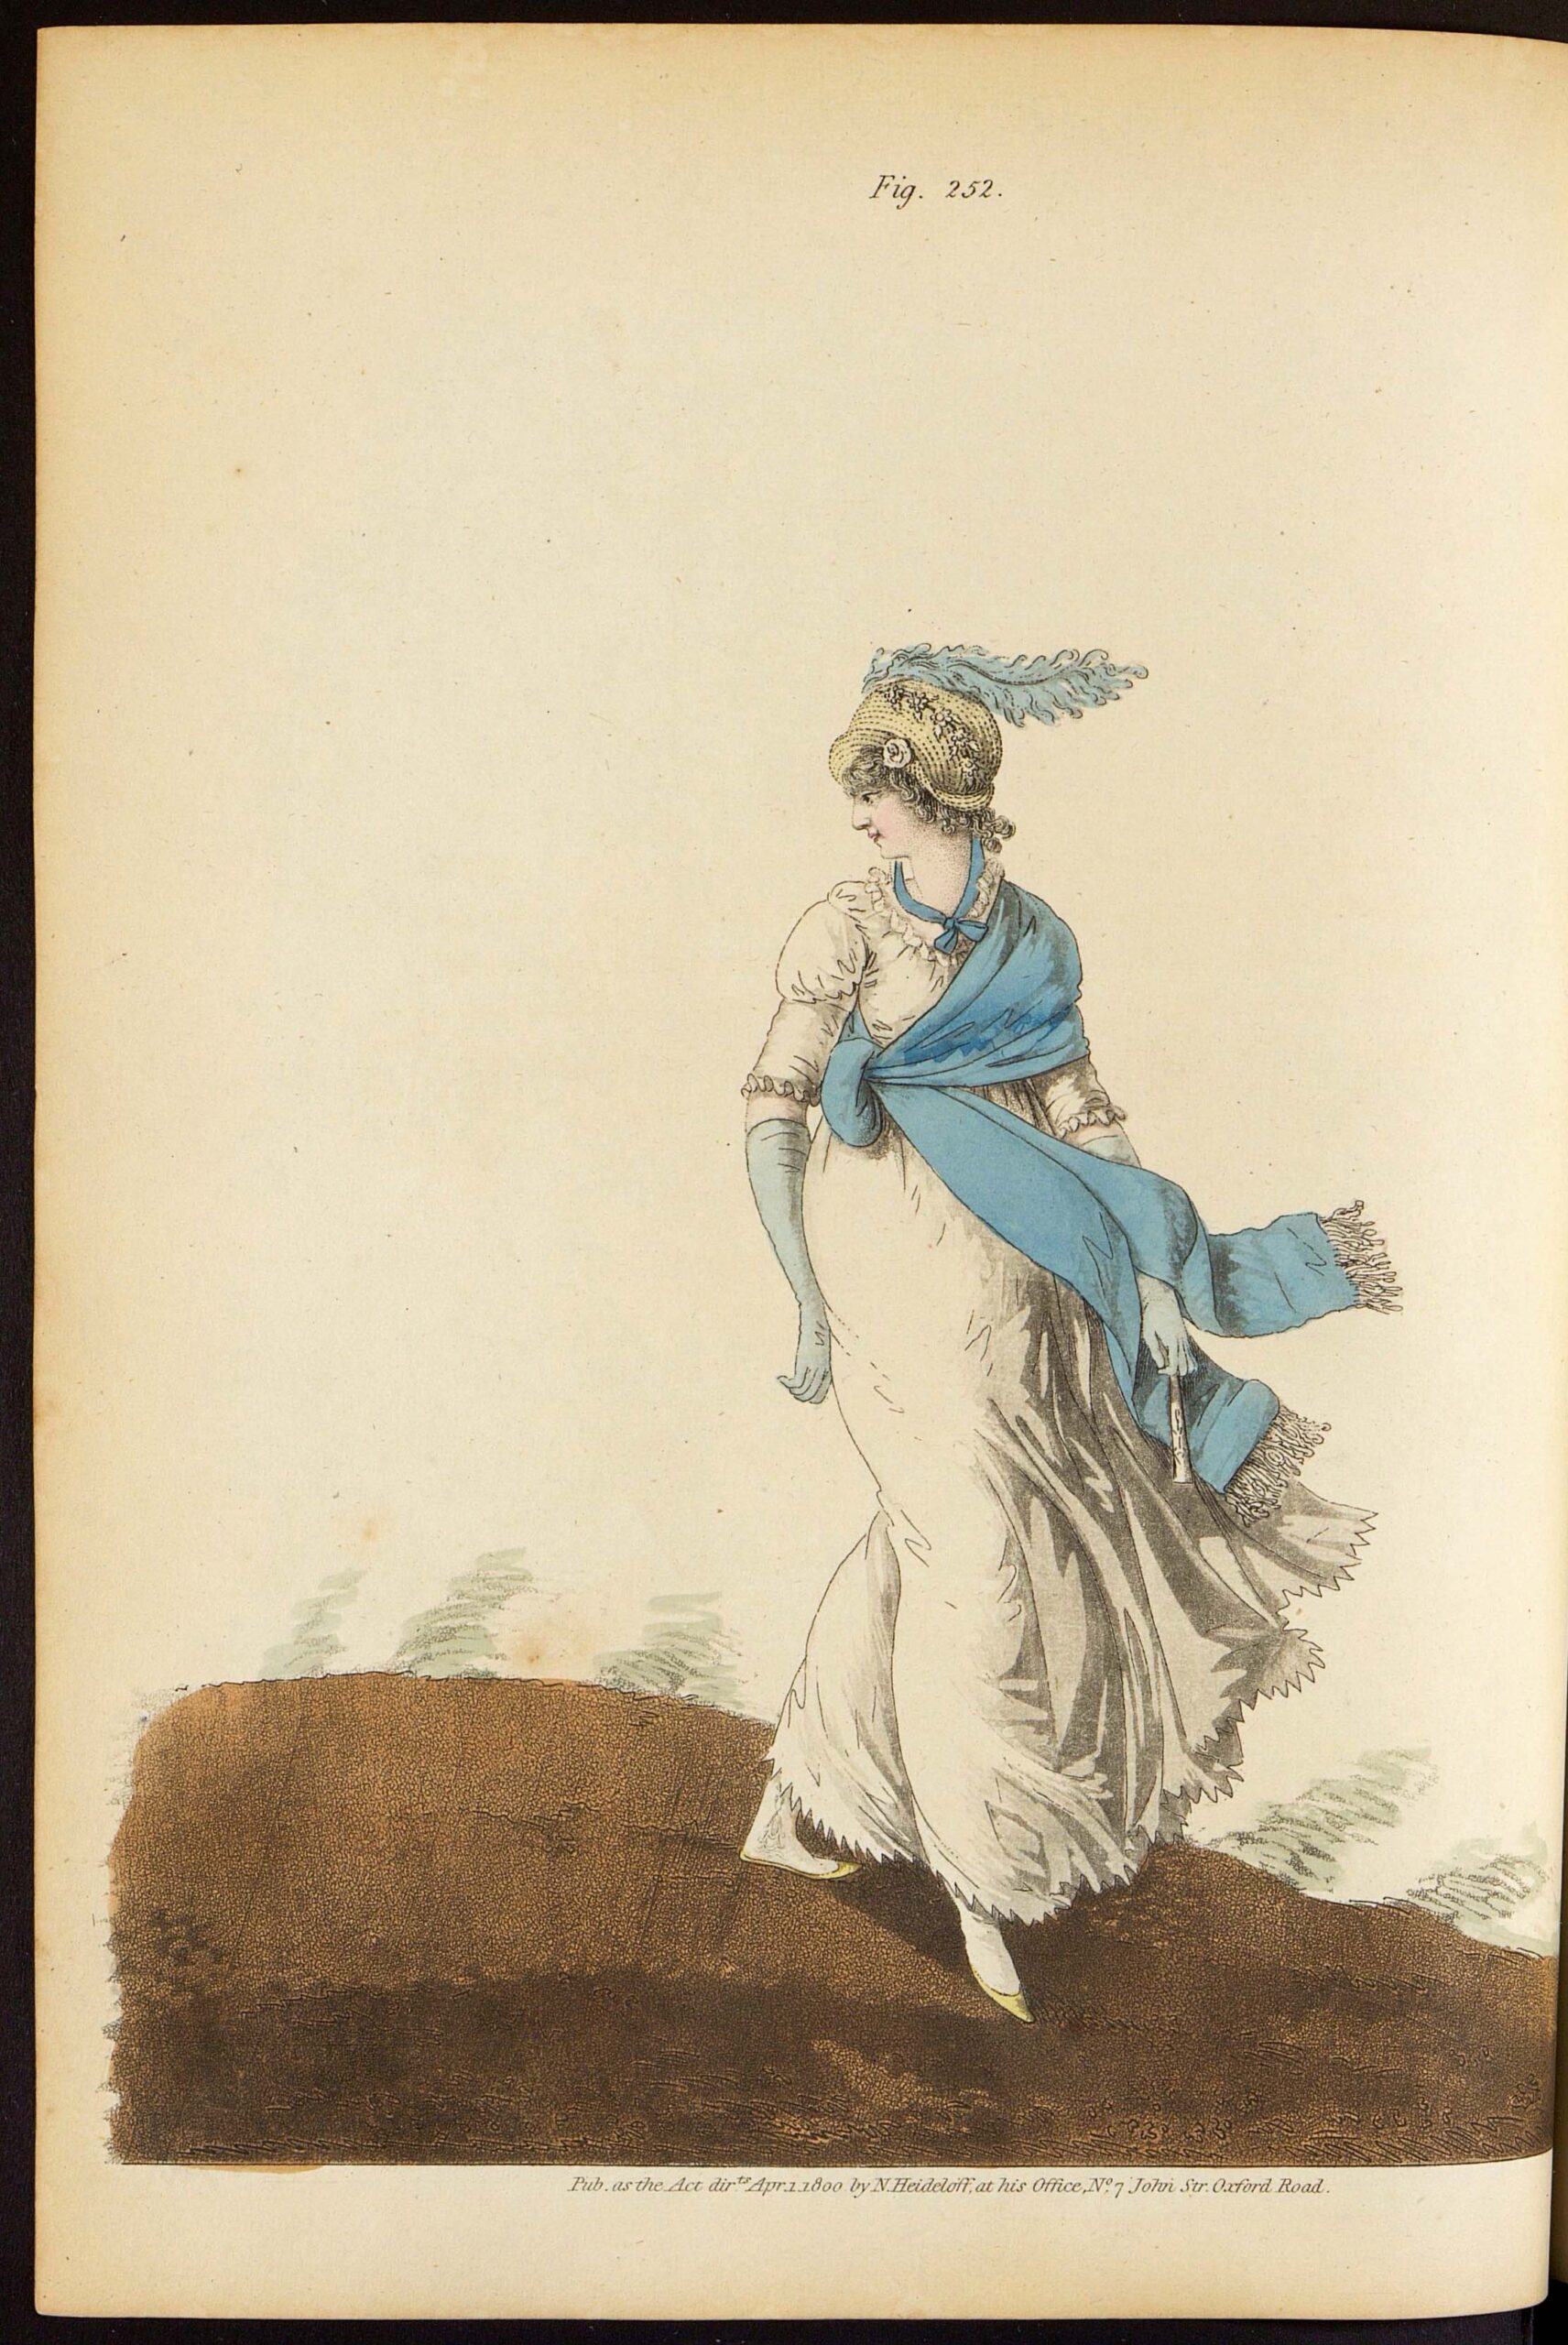 Утреннее платье. Лист из журнала «Gallery of fashion»Великобритания, 1800 г.